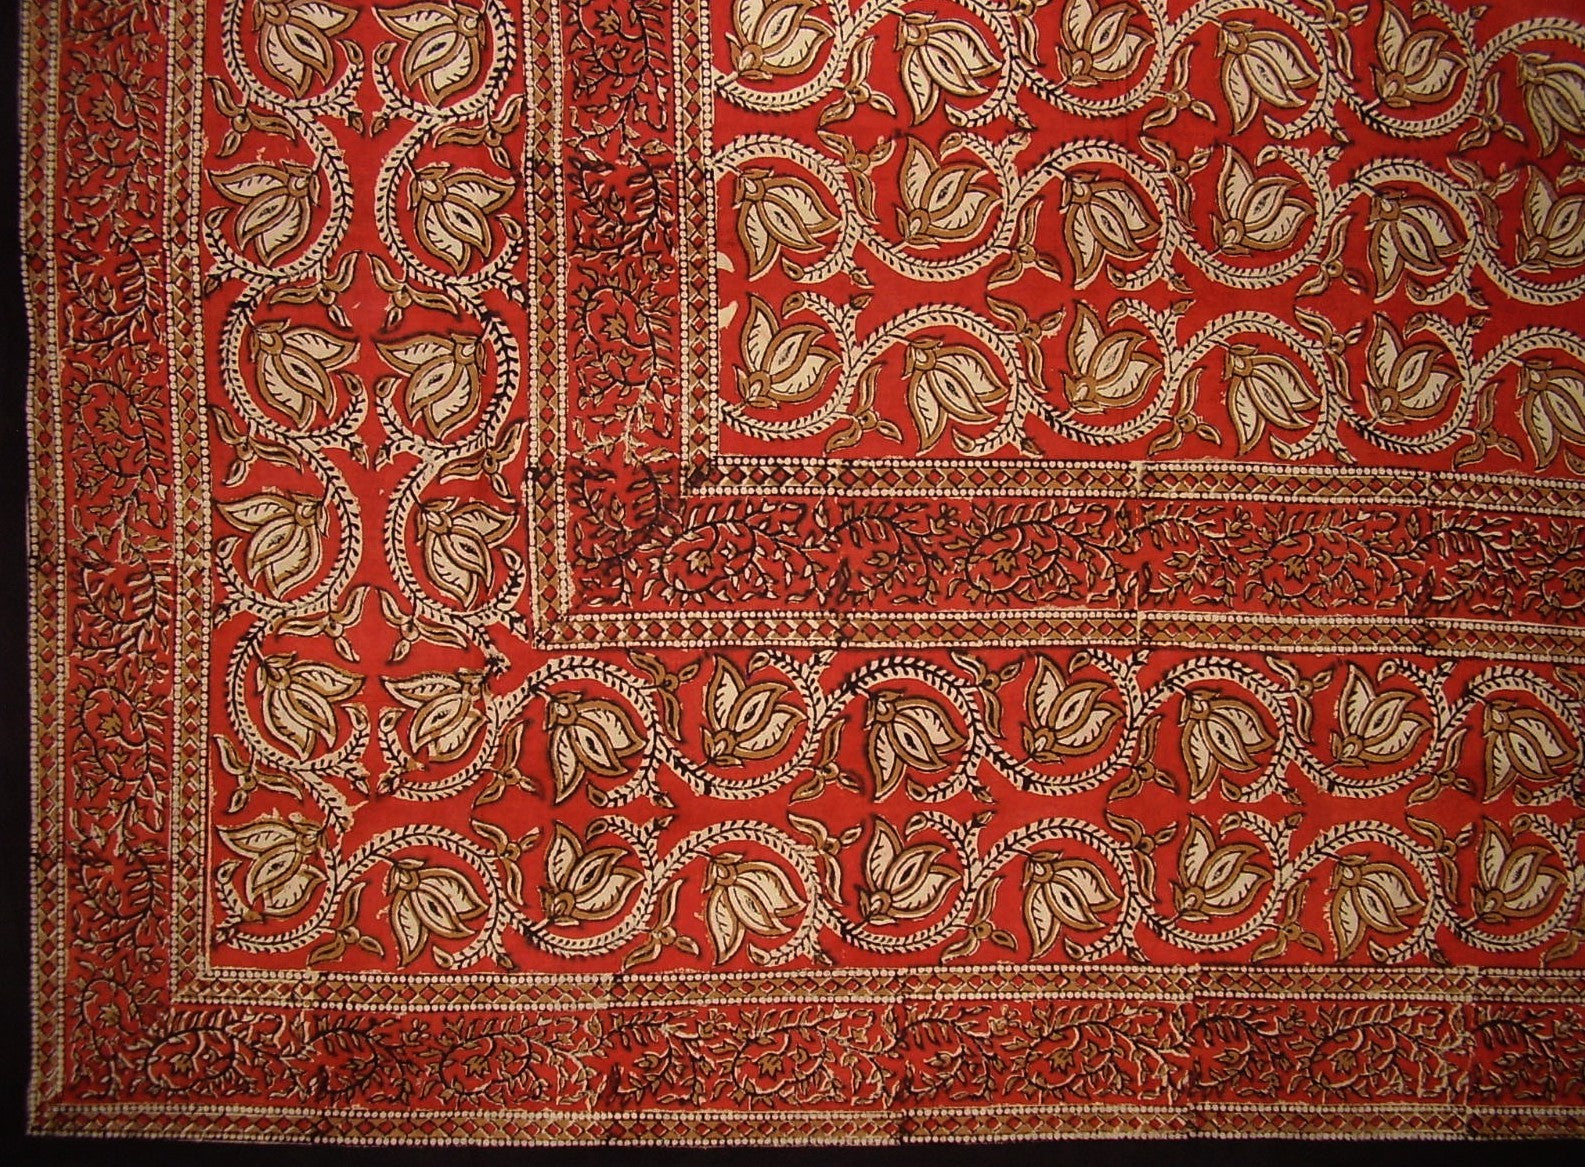 Dabu 手工块印花花卉棉质桌布 86 英寸 x 60 英寸红色